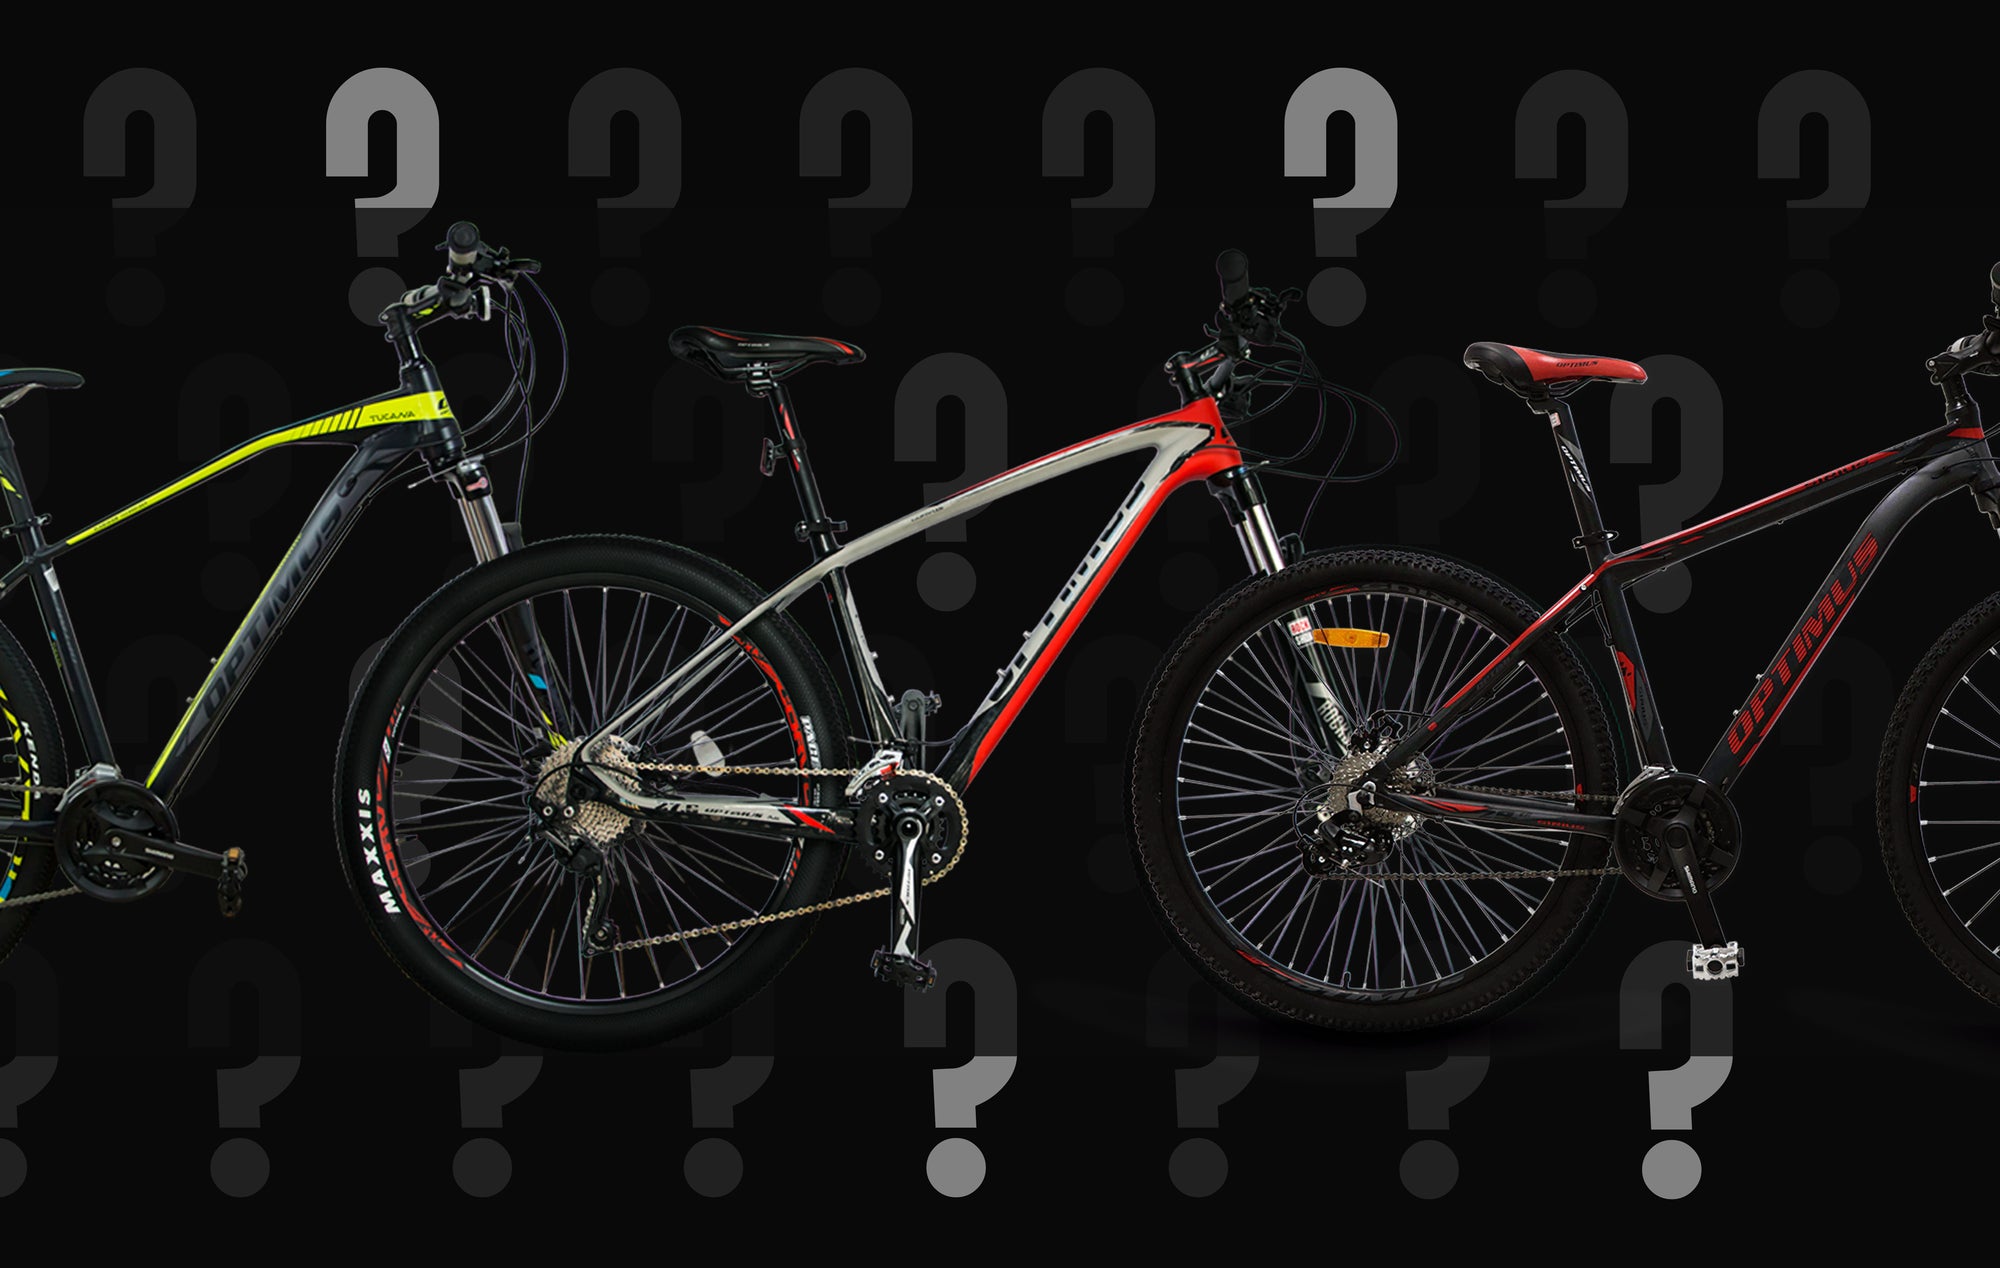 Qué es la bicicleta de montaña? –